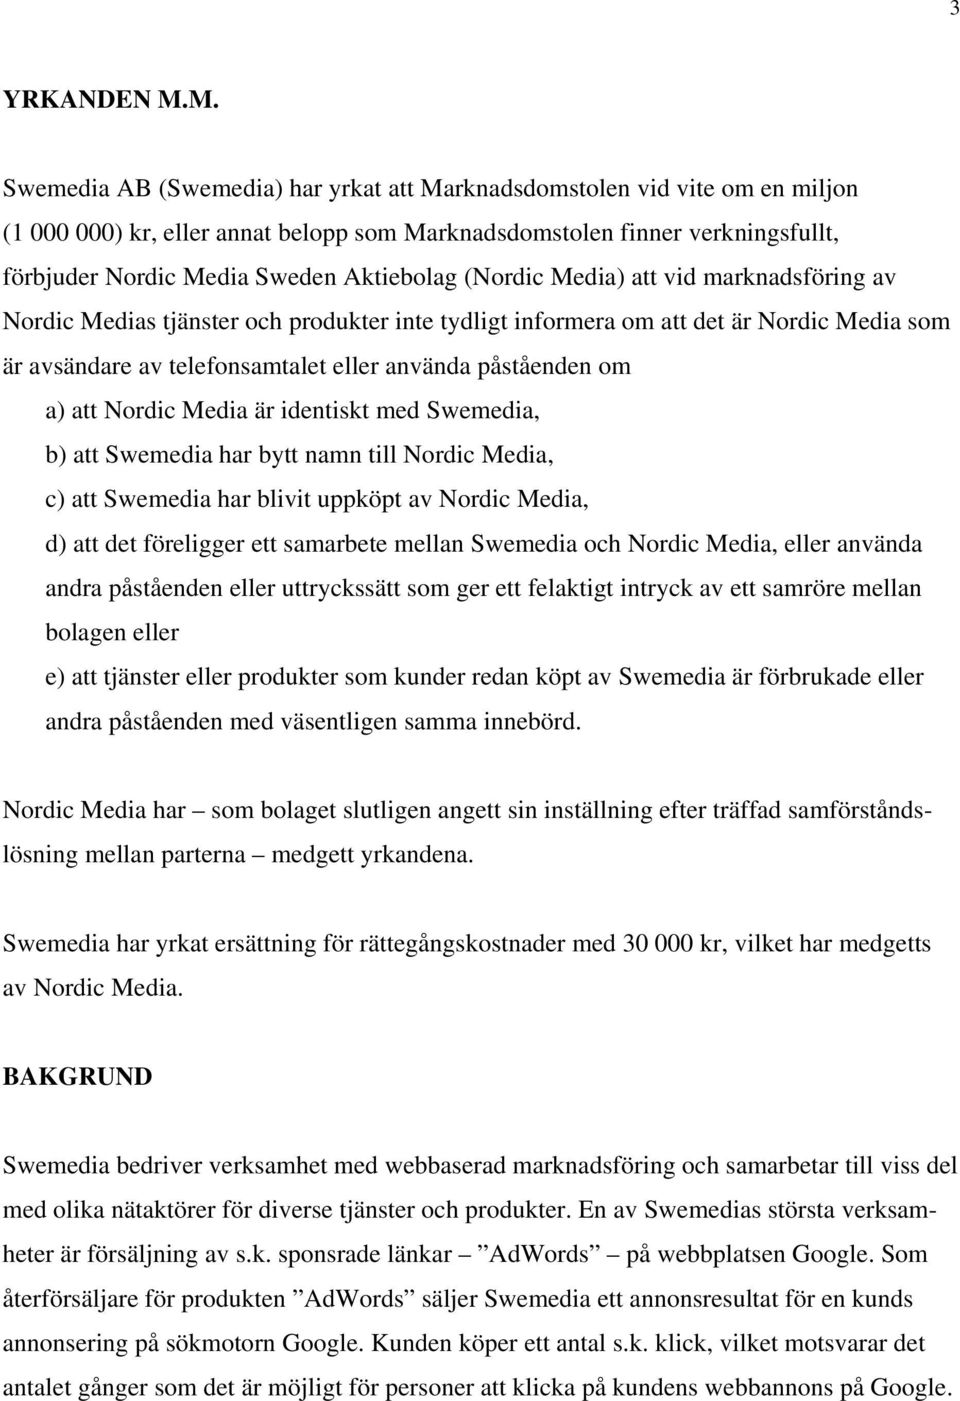 Aktiebolag (Nordic Media) att vid marknadsföring av Nordic Medias tjänster och produkter inte tydligt informera om att det är Nordic Media som är avsändare av telefonsamtalet eller använda påståenden